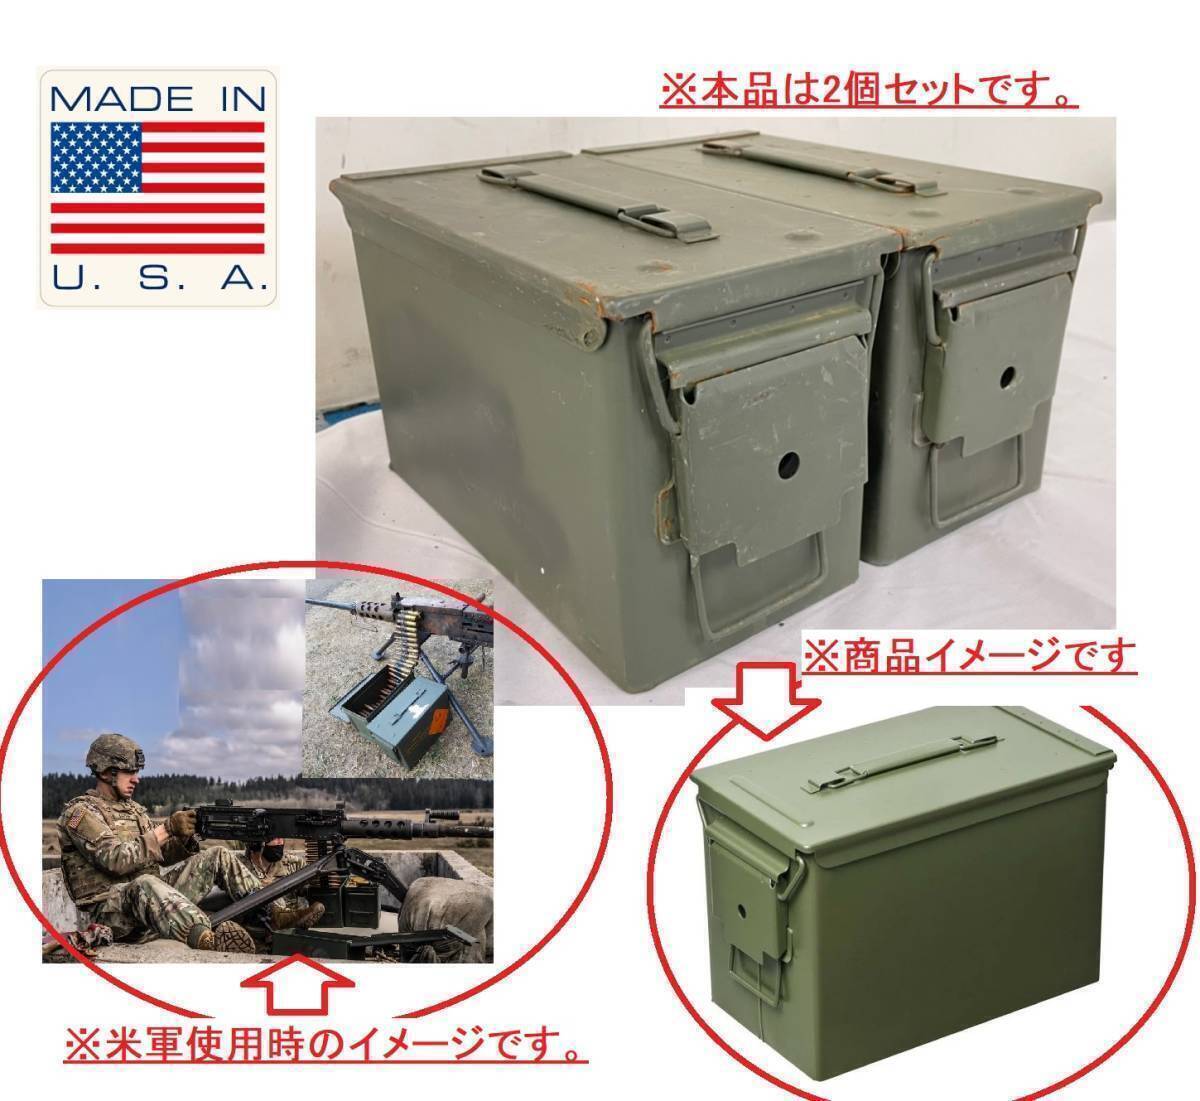 【米軍放出品】☆アンモボックス2個セット M2A1 AMMOBOX ミリタリー アンモ缶 アーモ缶 アモカン 工具箱 弾薬箱 サバゲー(100)AD19AK#24の画像2